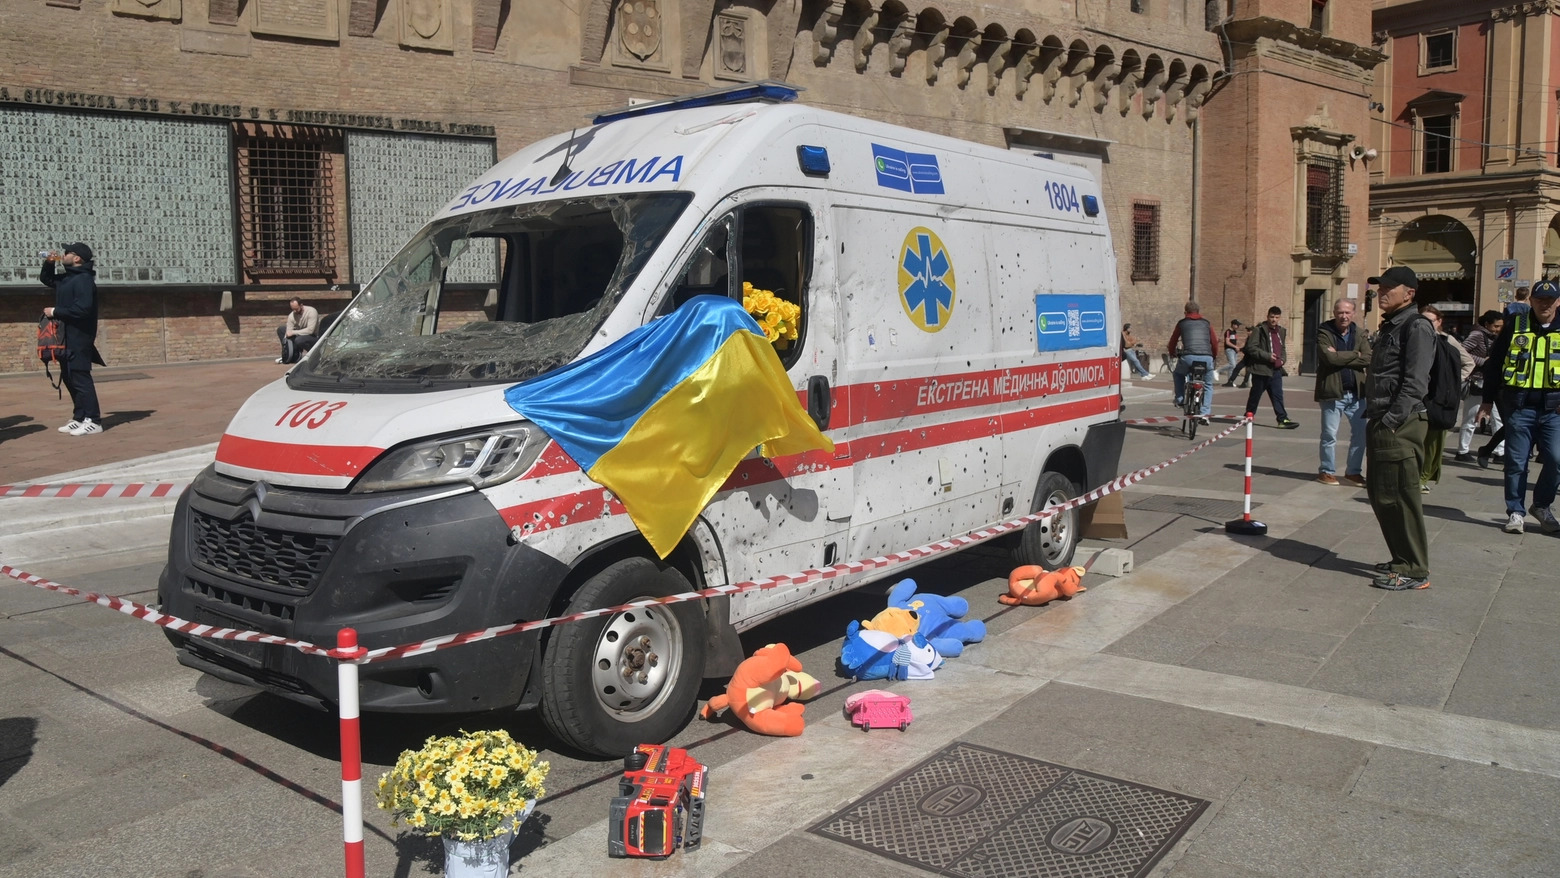 Il mezzo si trova in piazza Nettuno e fa parte di una campagna che ha l’obiettivo di raccogliere donazioni per l'acquisto di 112 nuove ambulanze per l'Ucraina. Don Mykhailo Boiko: “E’ un messaggio di soccorso e speranza”